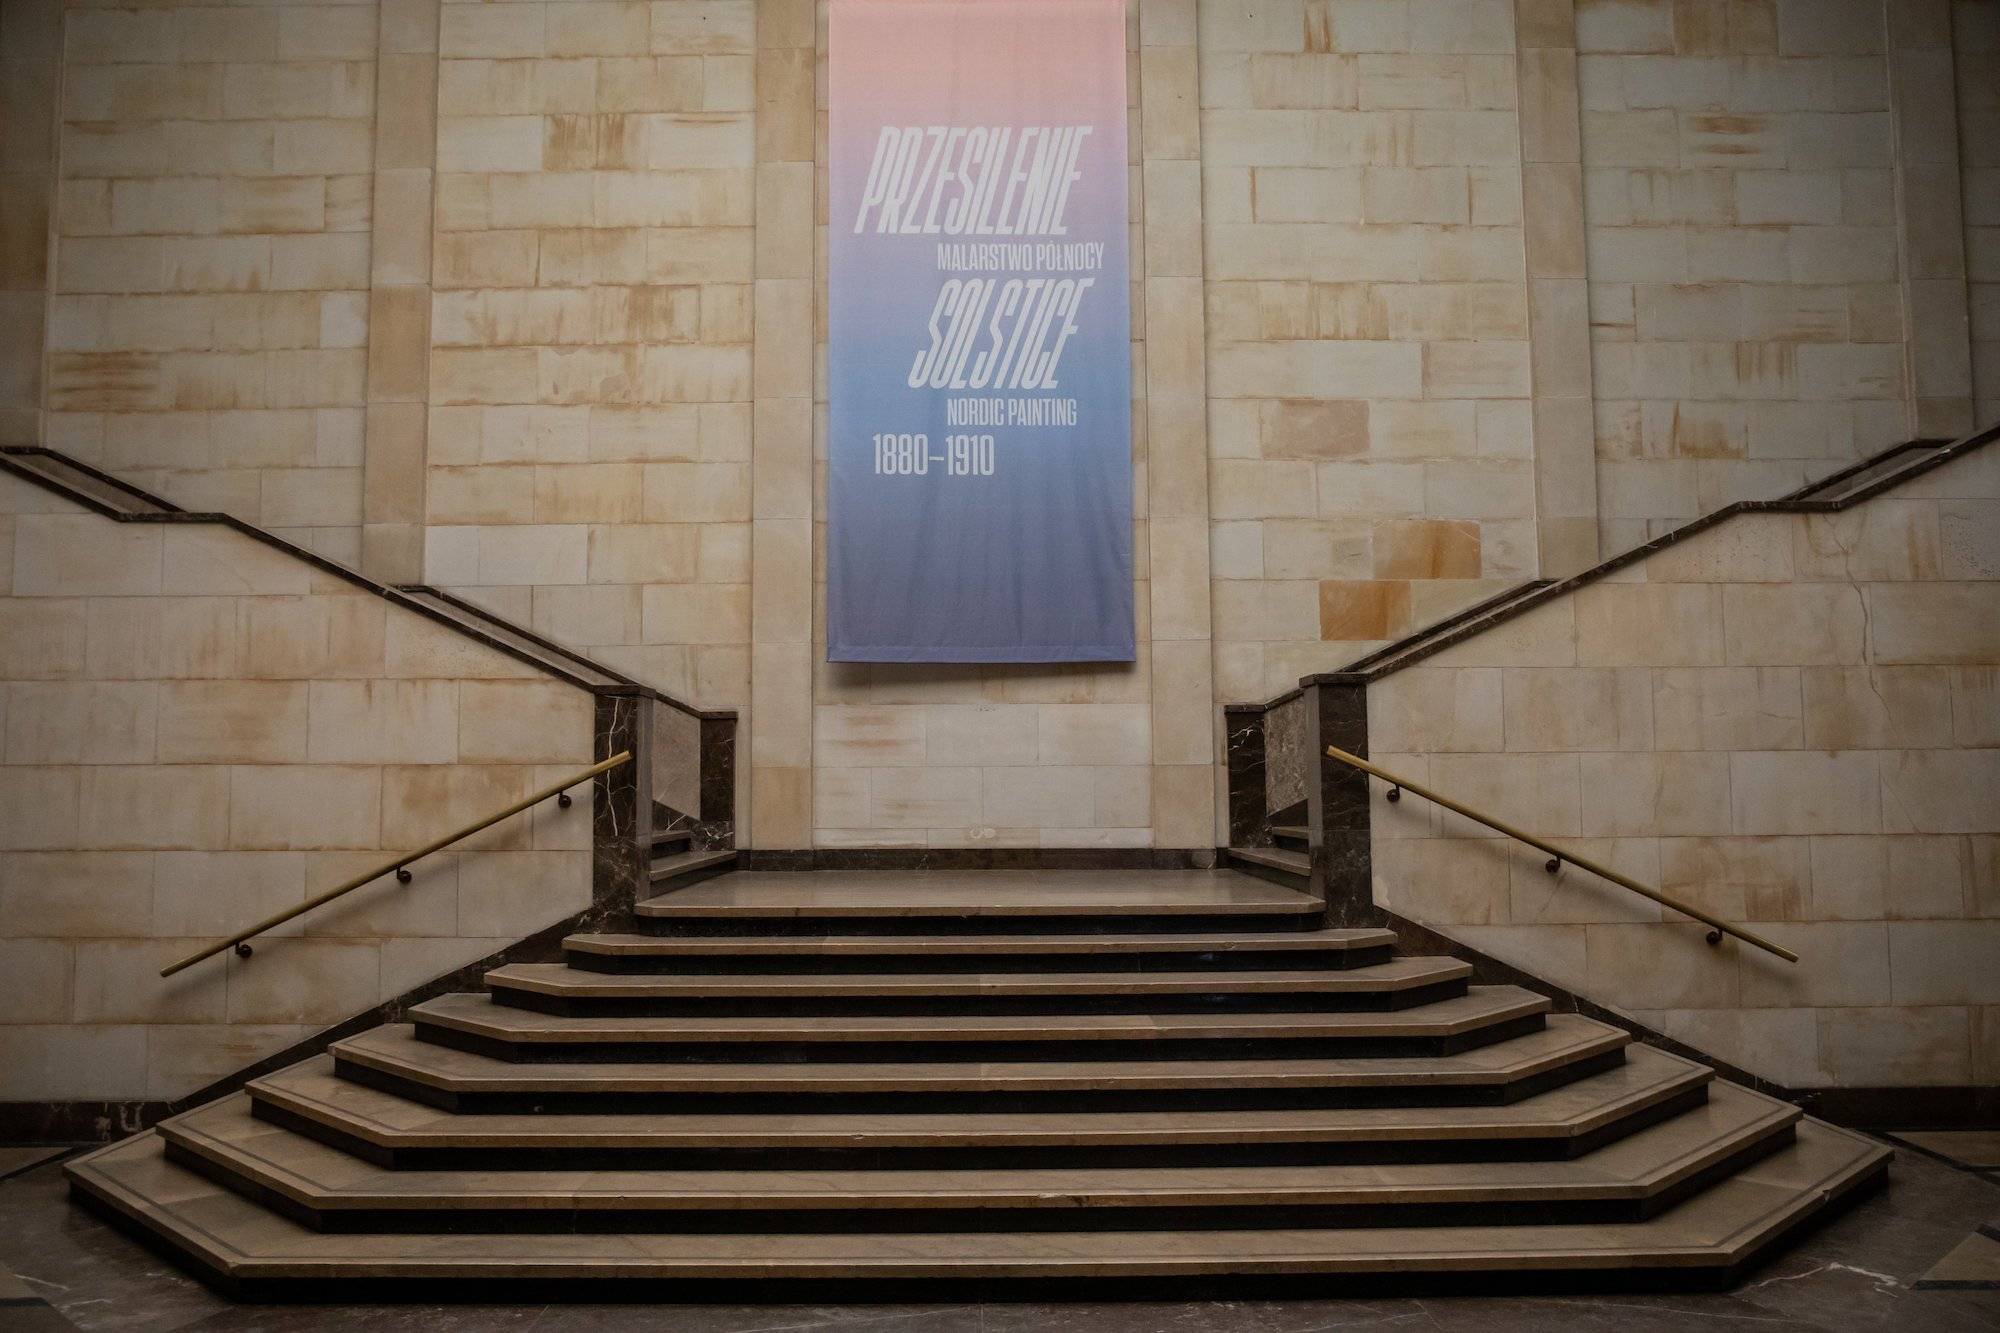 Wnętrze Muzeum Narodowego w Warszawie. Marmurowe schody i plakat reklamujący jedną z wystaw.